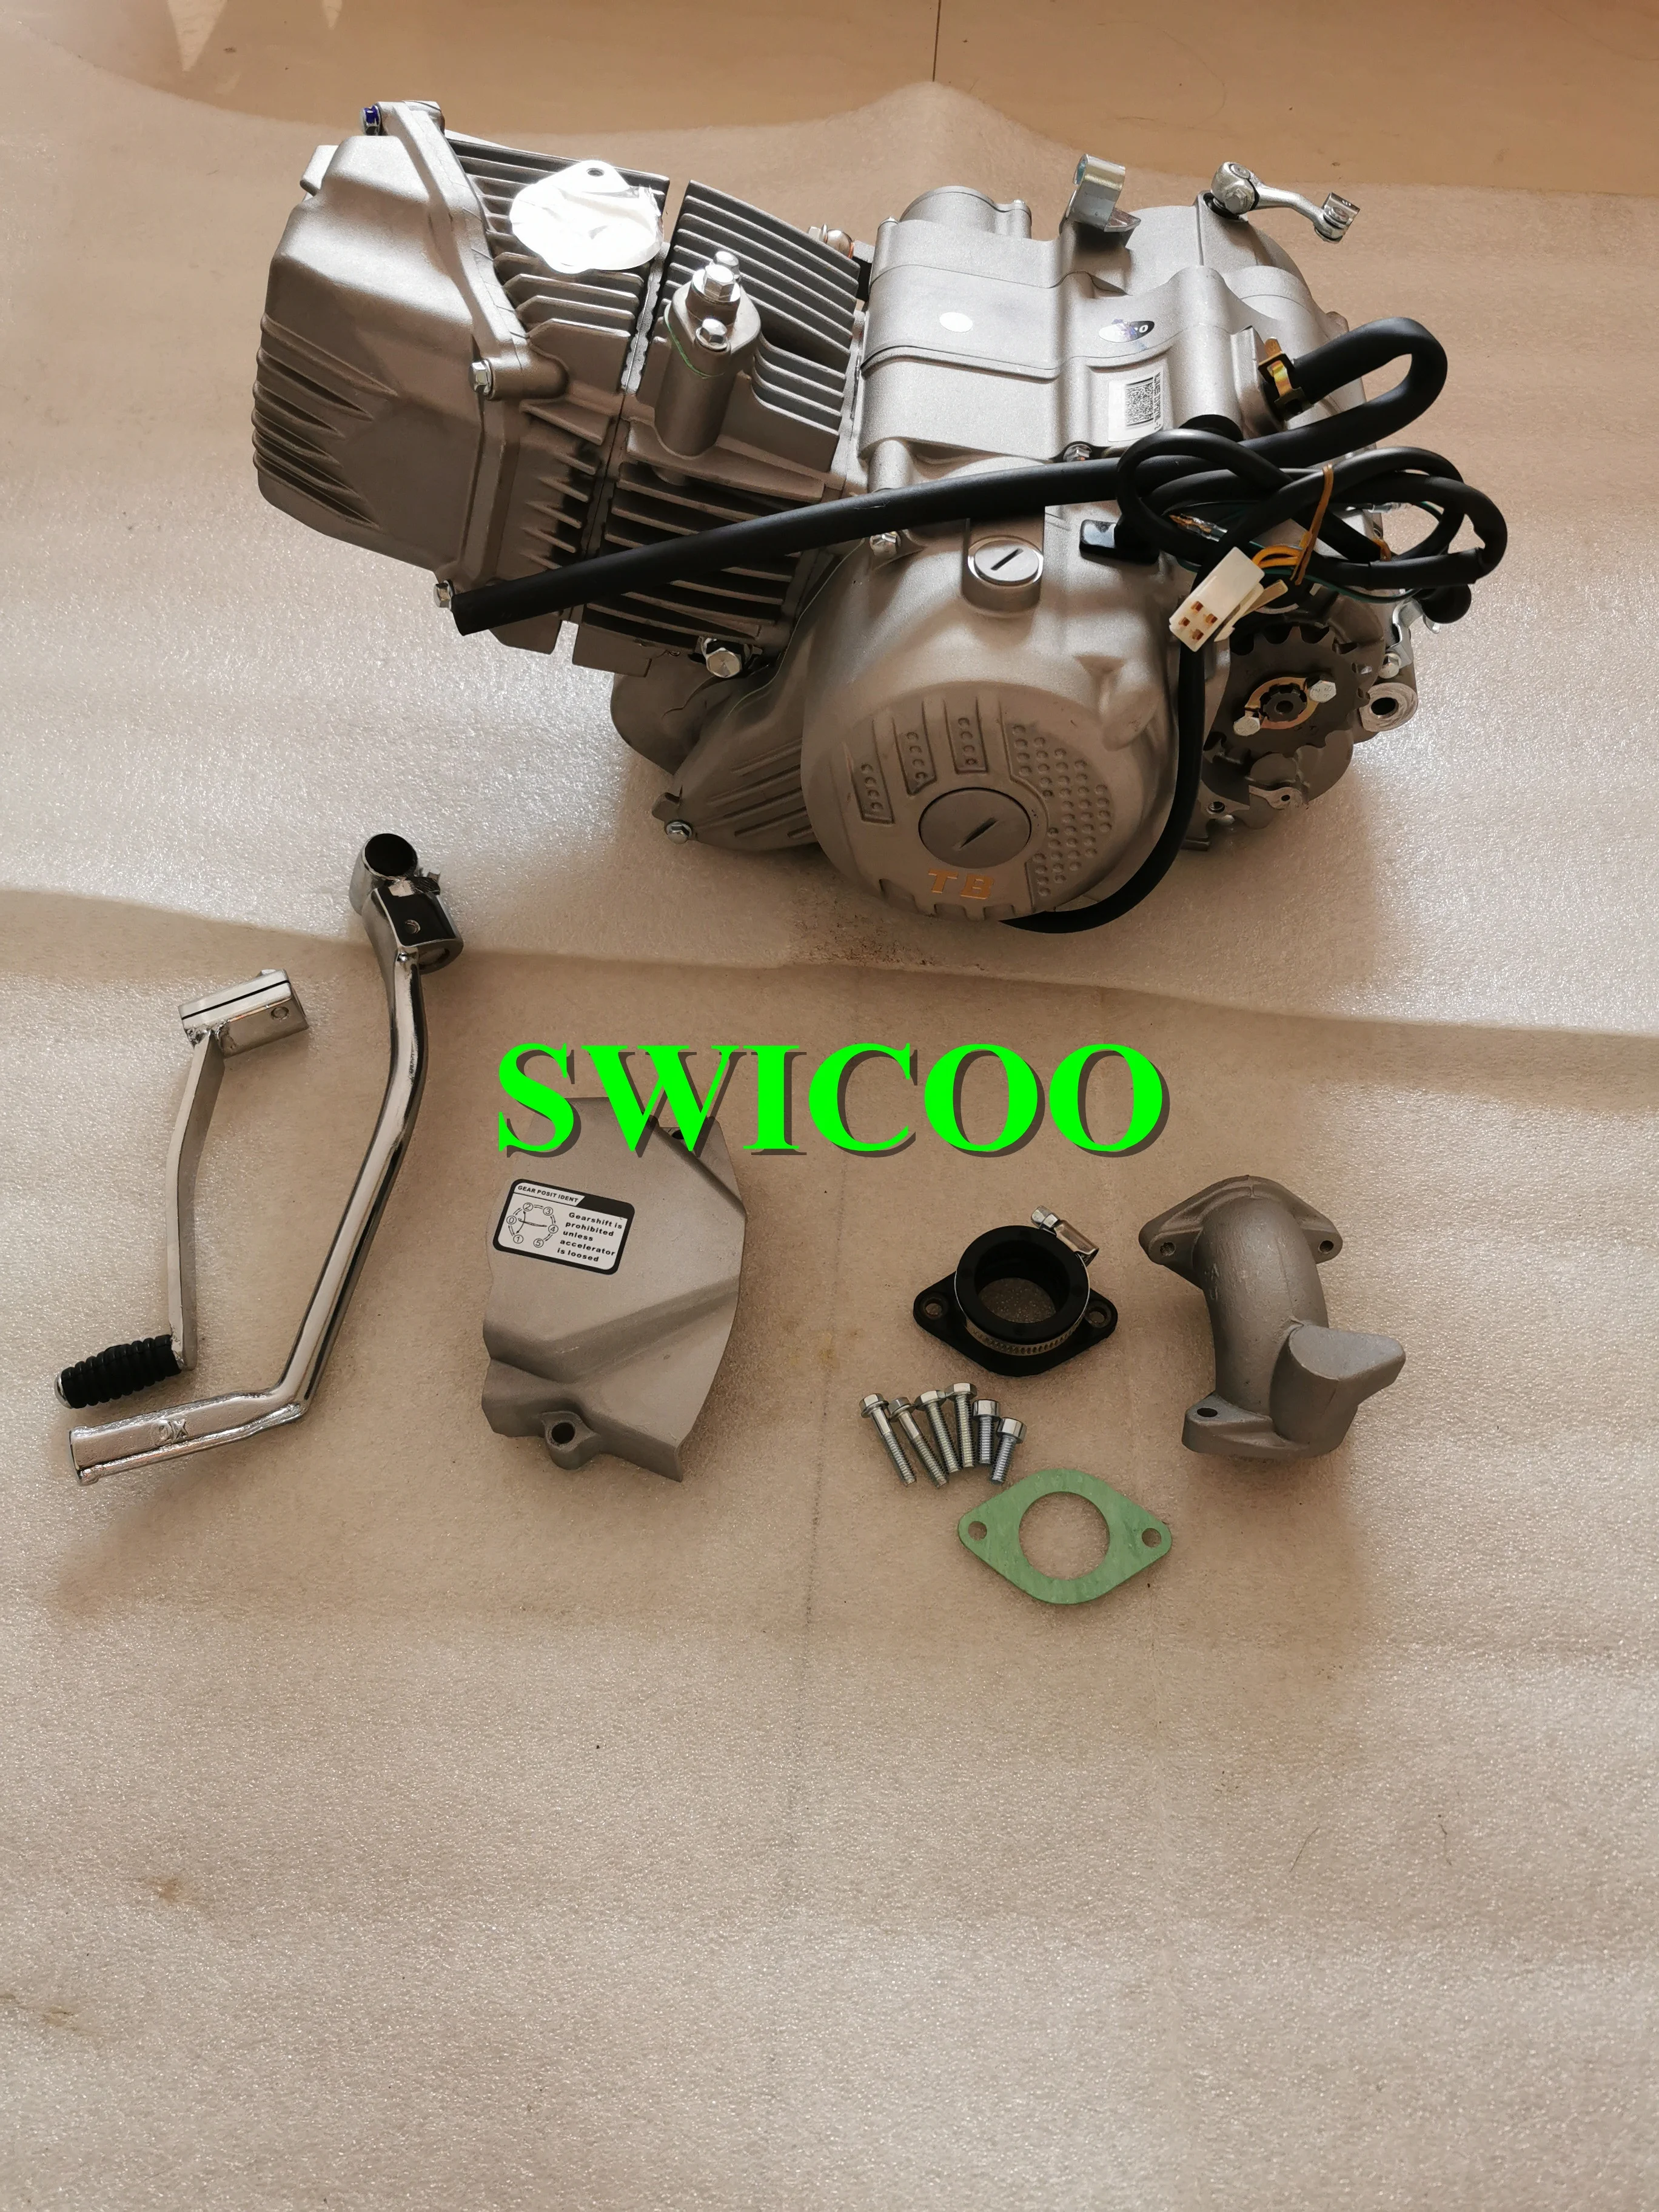 4 stroke engine motorcycle engine assembly 190CC Horizontal ZONGSHEN 190 engine Daytona Anima 190cc